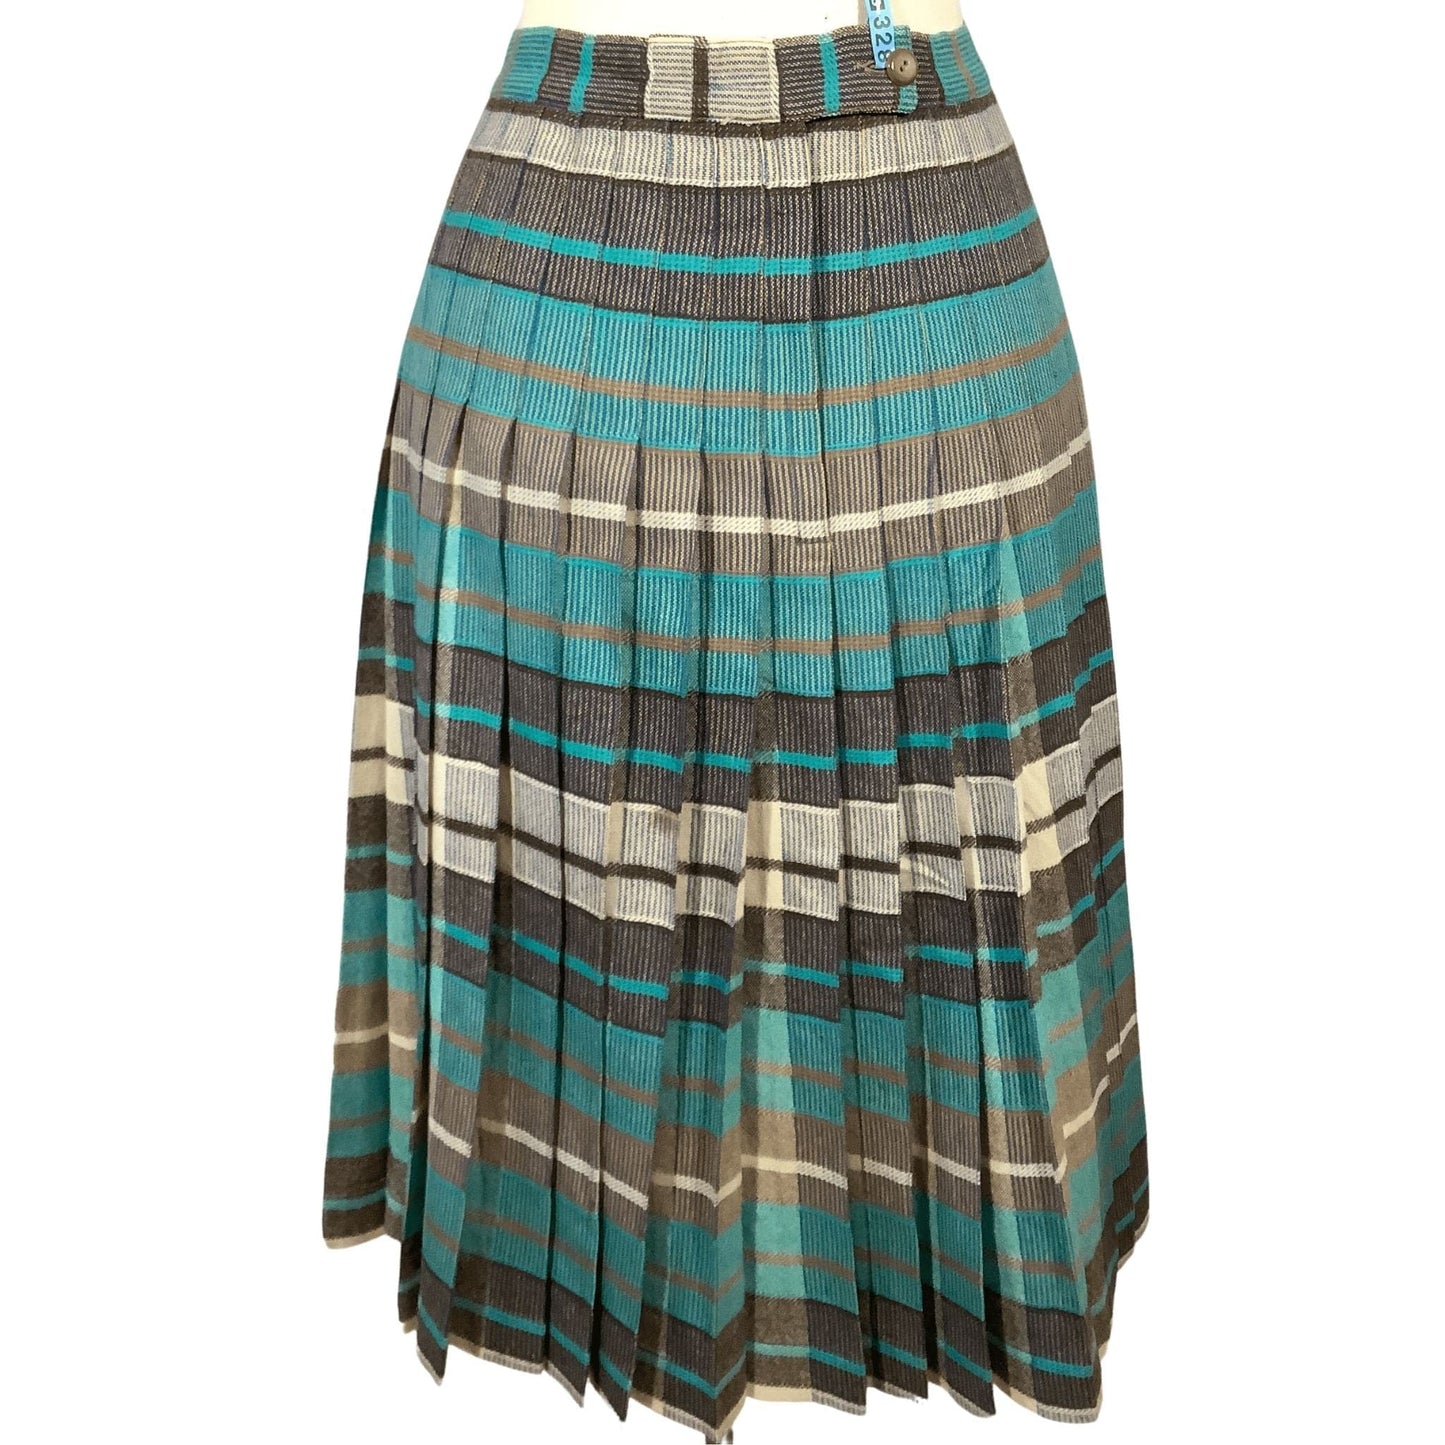 Teal Plaid Wool Skirt Small / Multi / Vintage 1960s